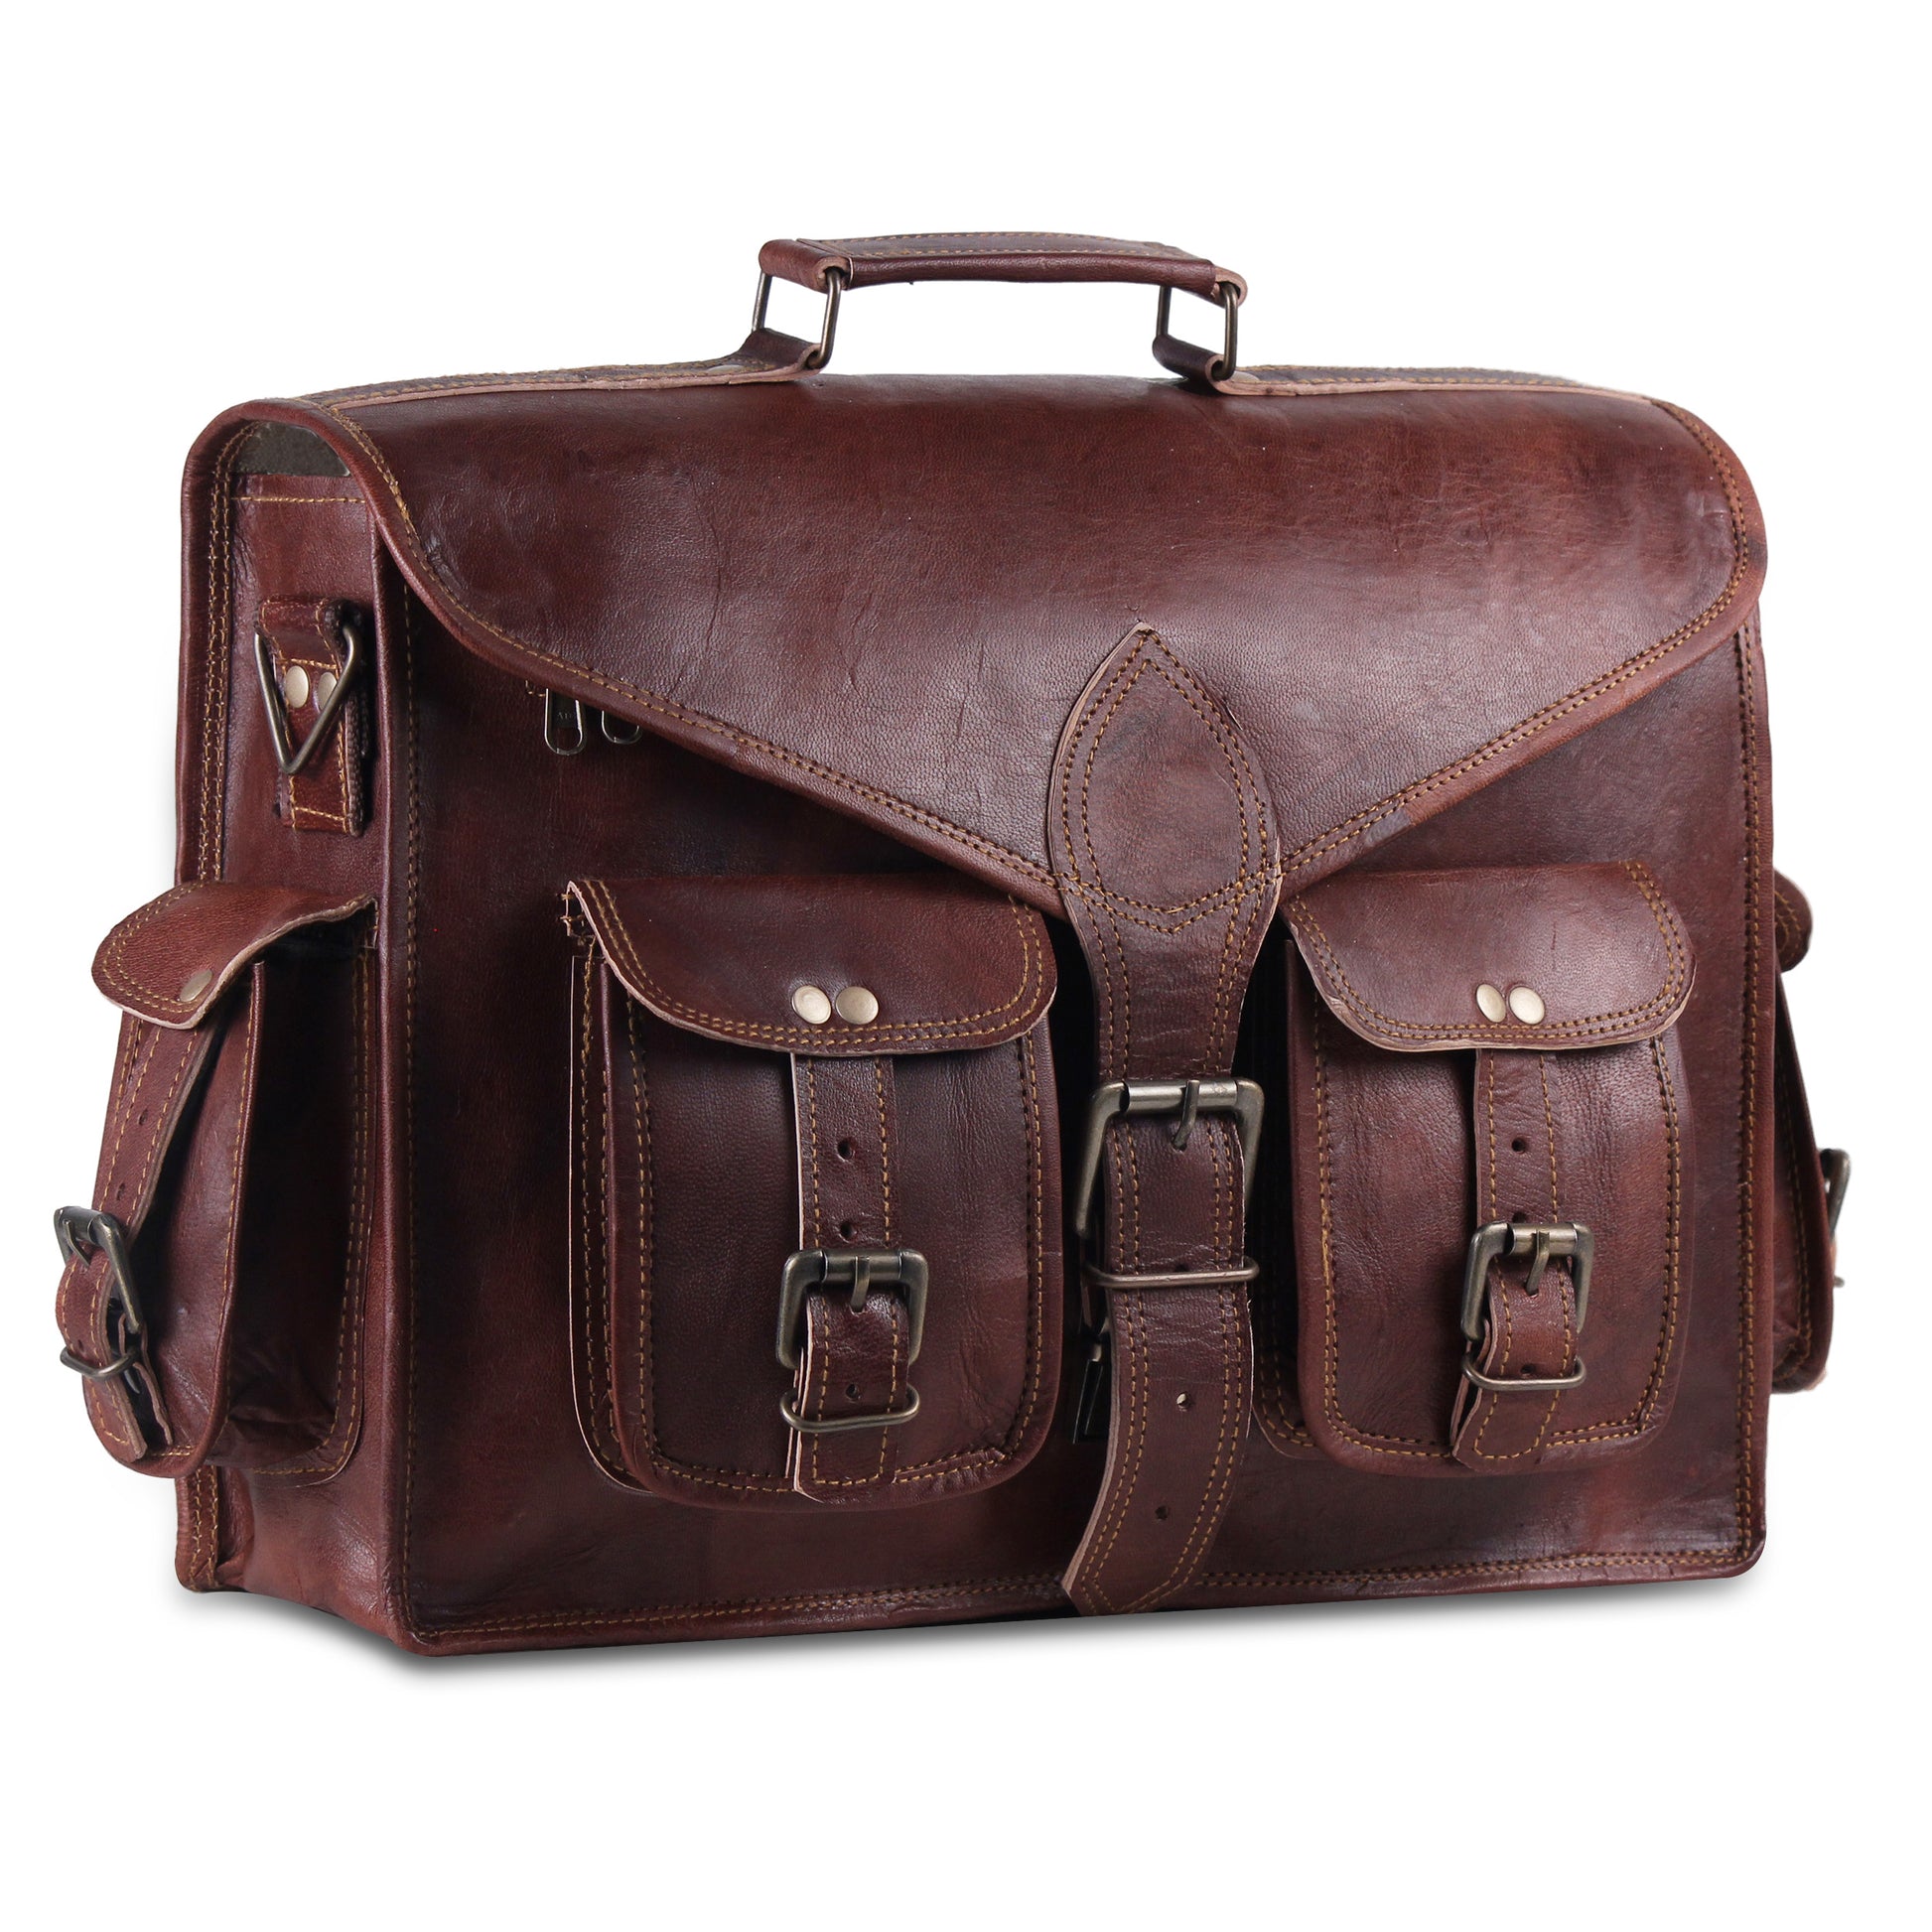 Vintage Leather Messenger Bag with External pockets